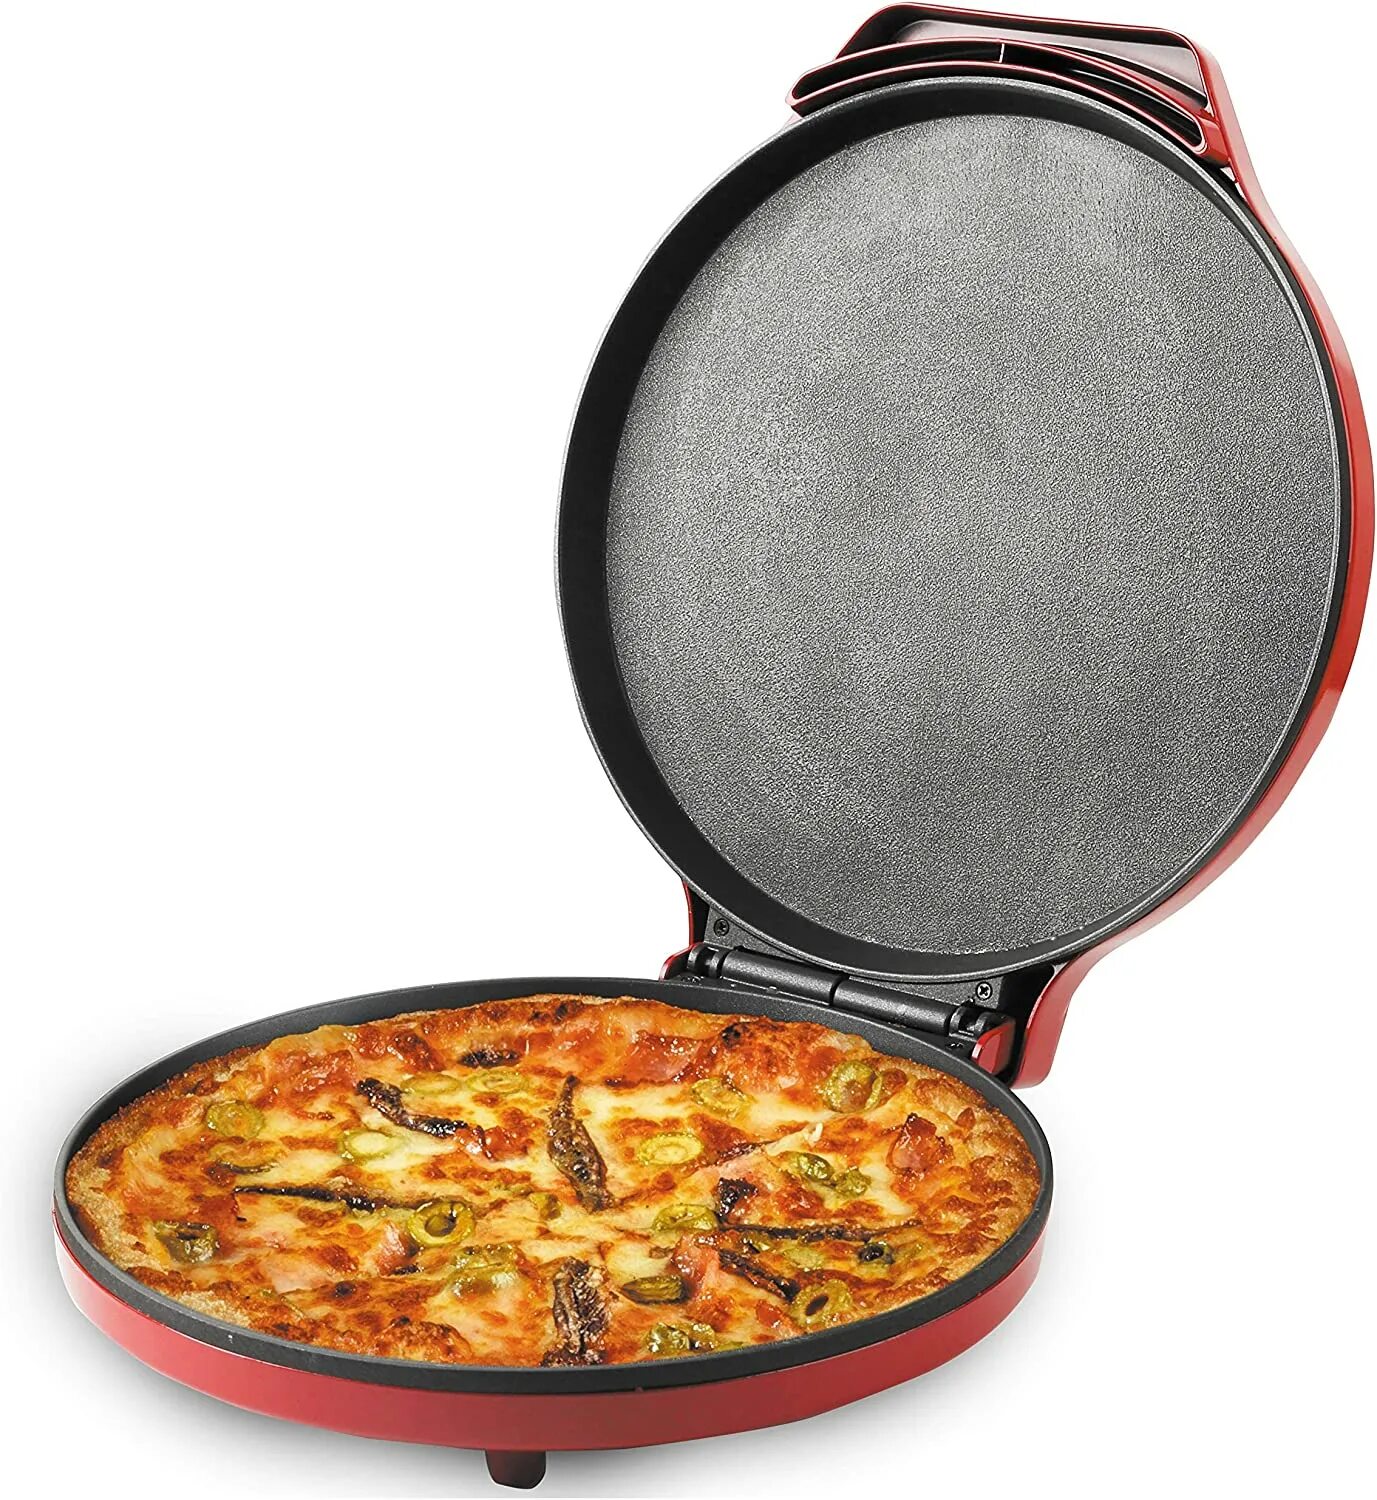 Купить духовку для пиццы. Пицца в духовке. Электроплита для пиццы. Электрическая плита для пиццы. Печь для пиццы электрическая.